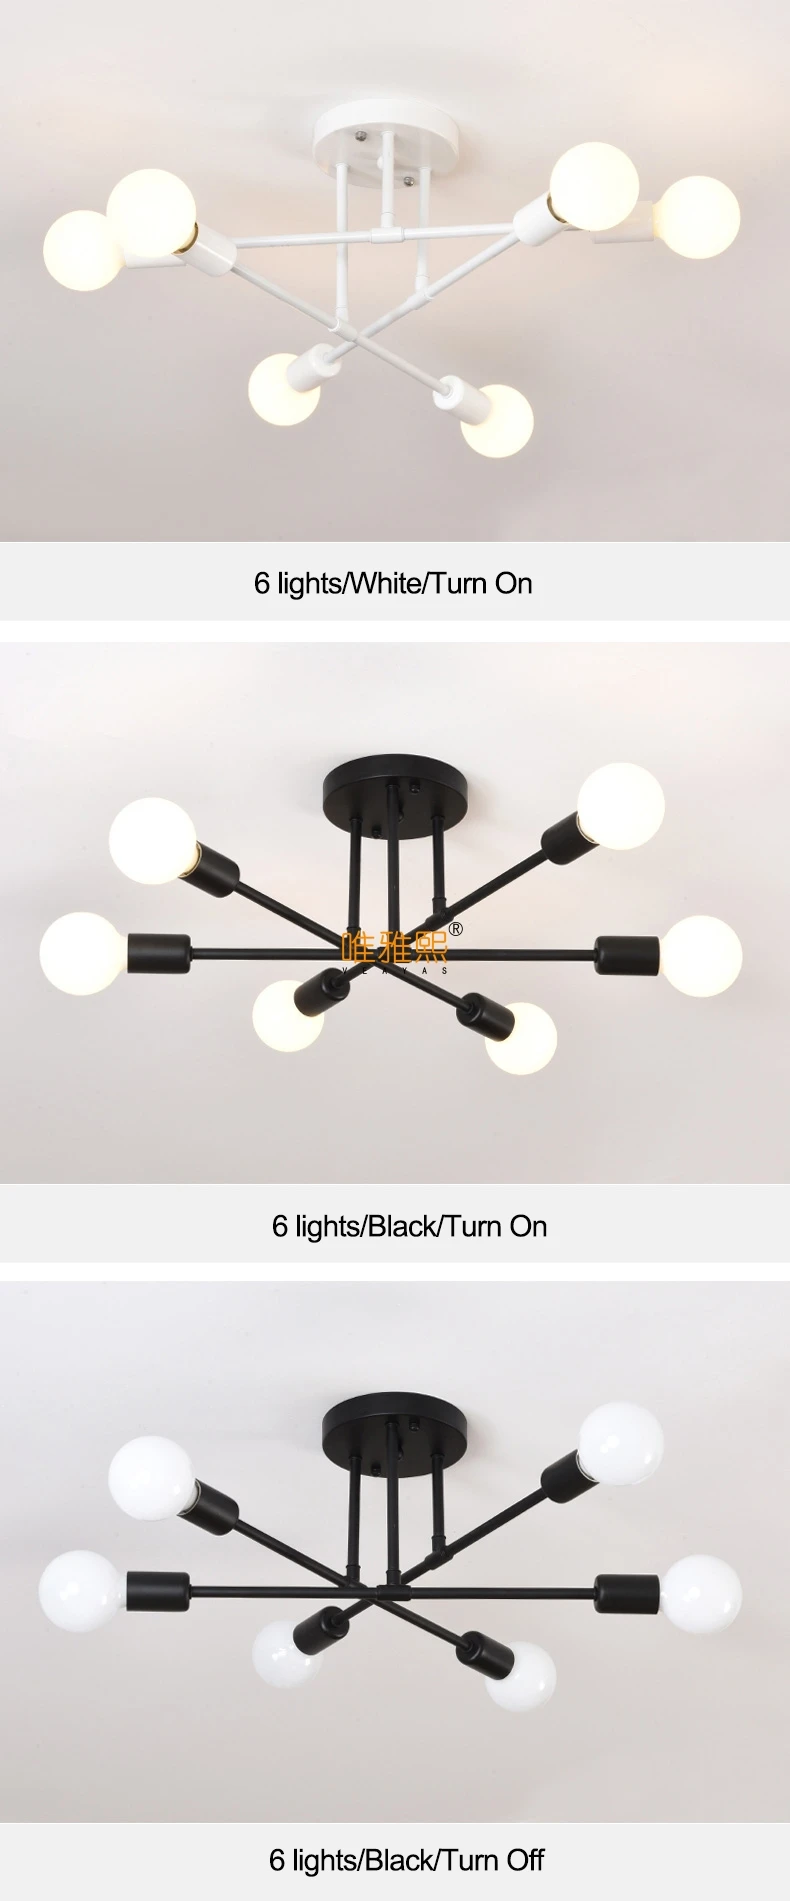 Бесплатный светодиодный светильник 85-265 в E27 Chander Lighting Vintag, светодиодный светильник, промышленные лампы, 6 ламп, люстра, светильник, белый